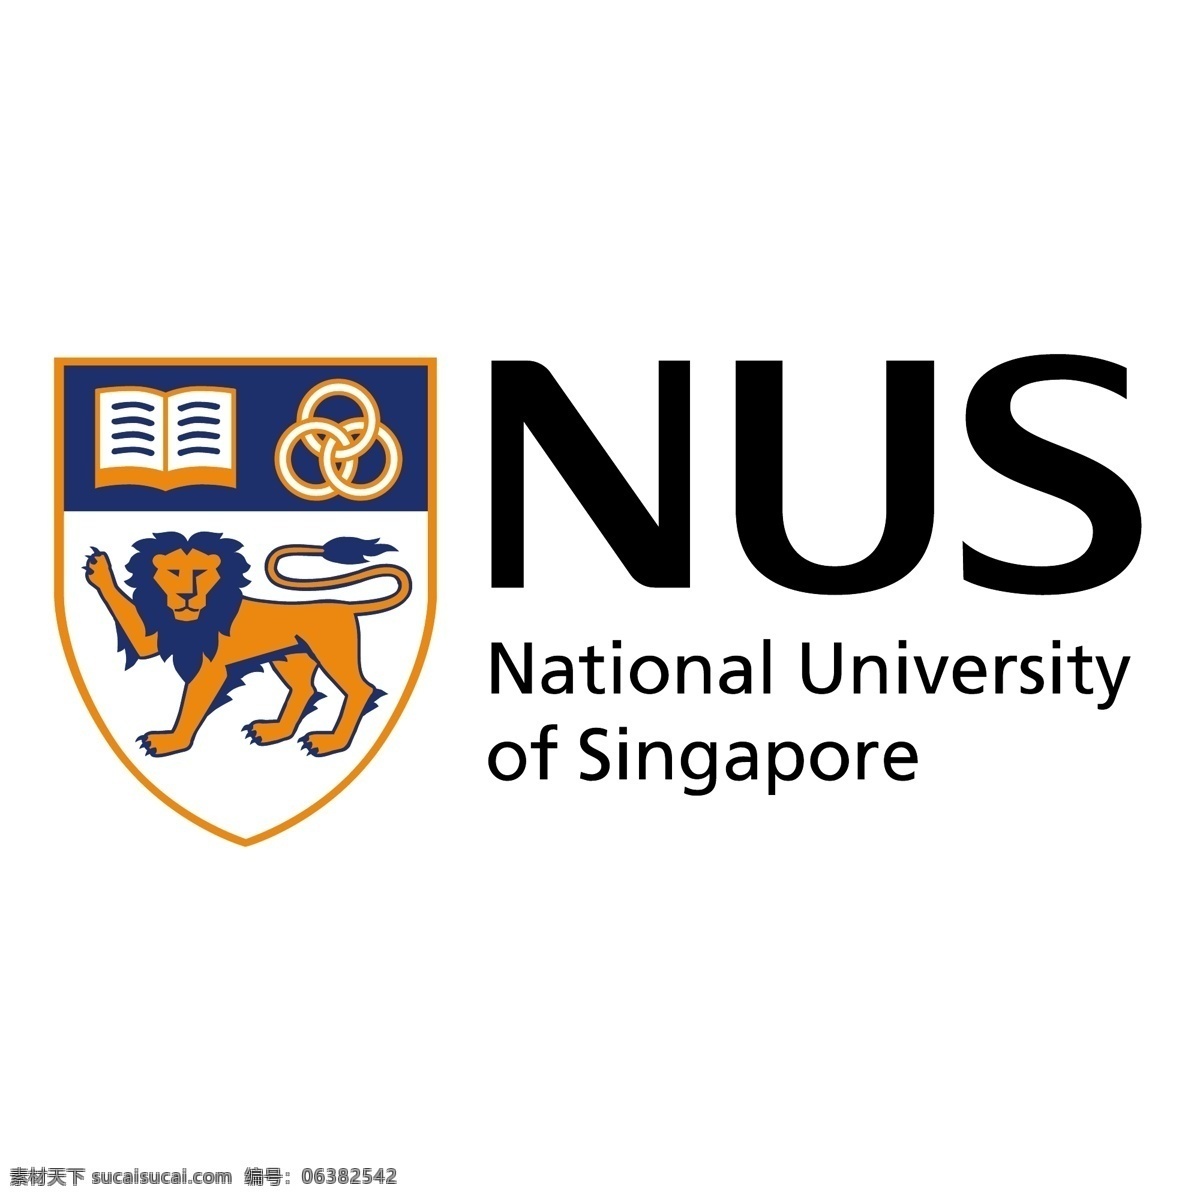 新加坡国立大学 免费 新加坡 标志 psd源文件 logo设计